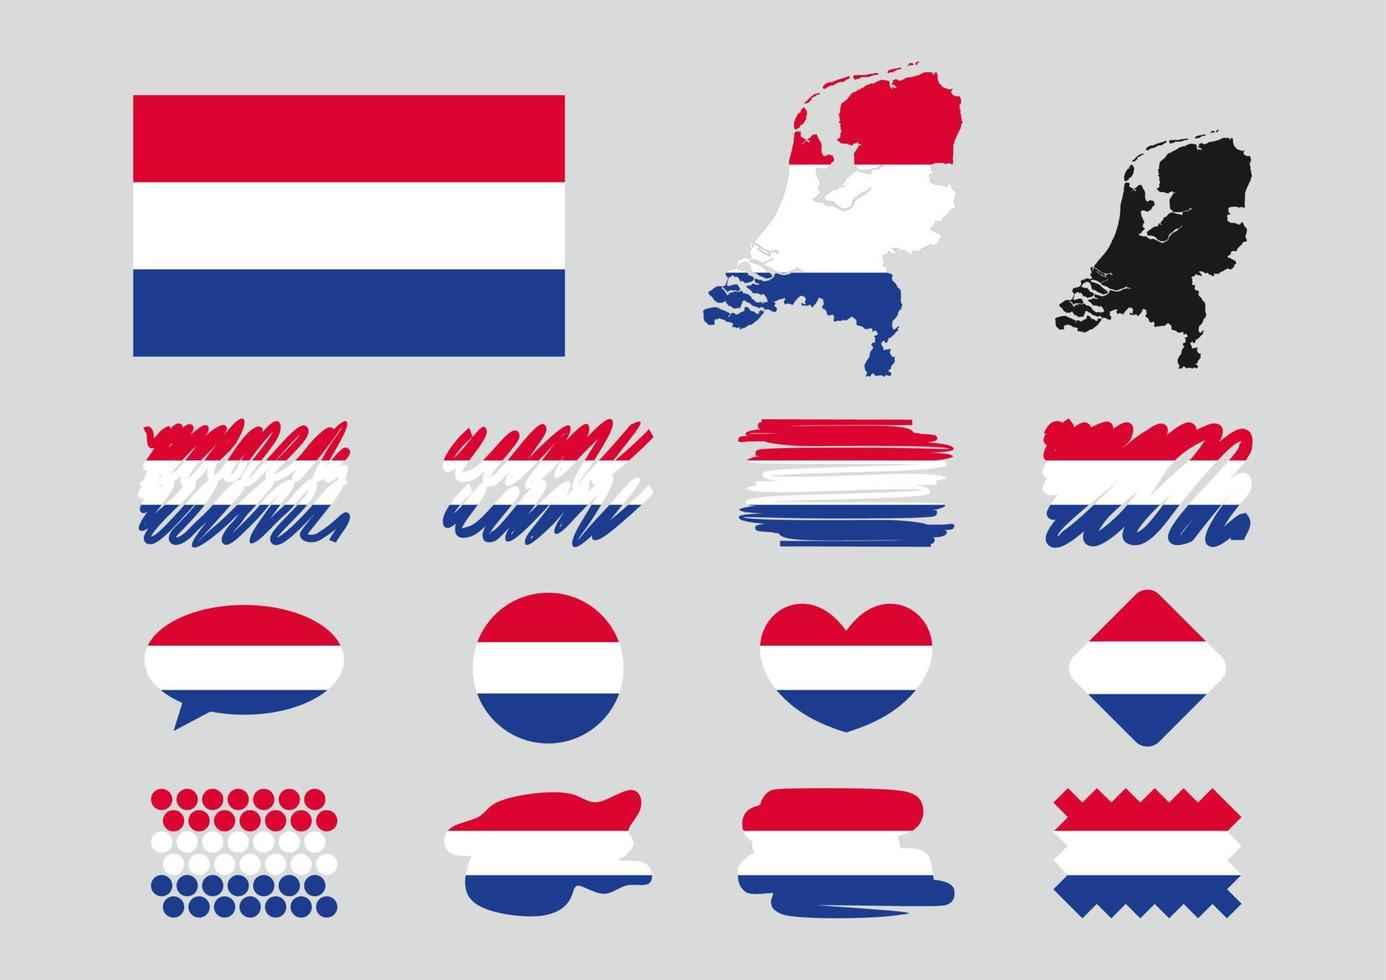 niederländische Flagge gesetzt. Karte, Herz, Kreis, Raute, Markierung, Textrahmen, Punkte. vektor